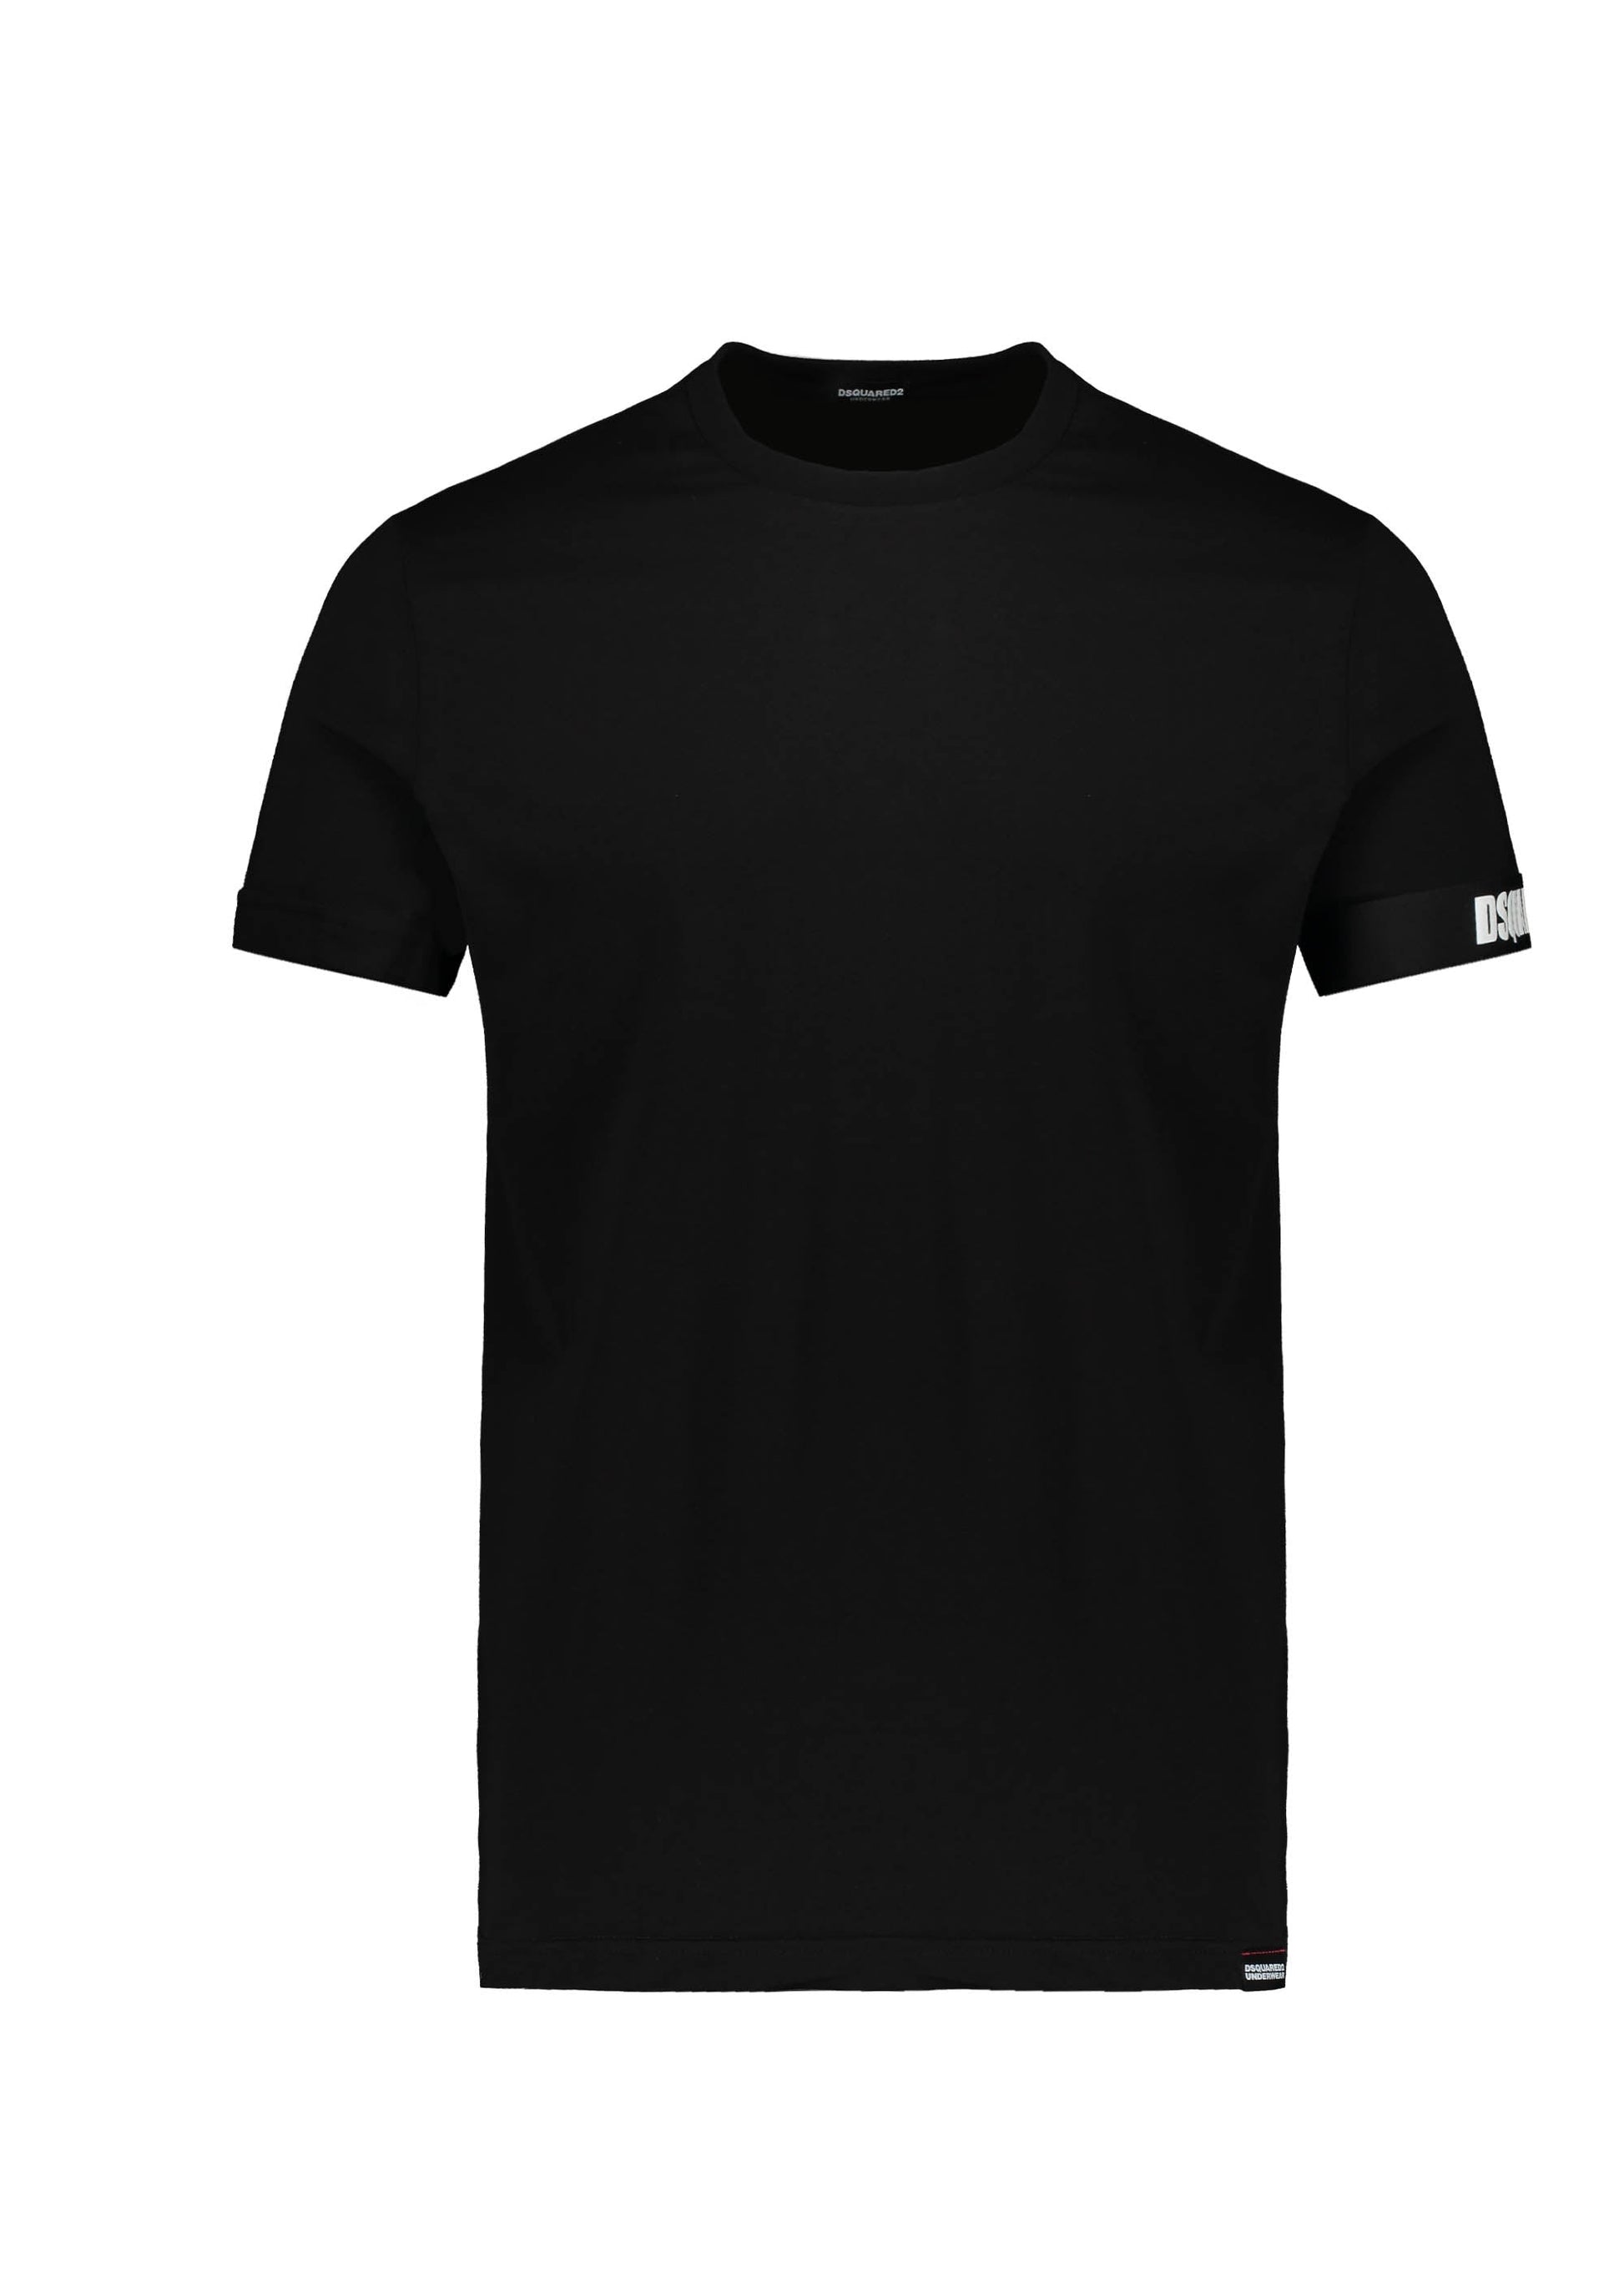 Dsquared2 D9M3S4530 Underwear T-Shirt - 001 Black - Escape Menswear